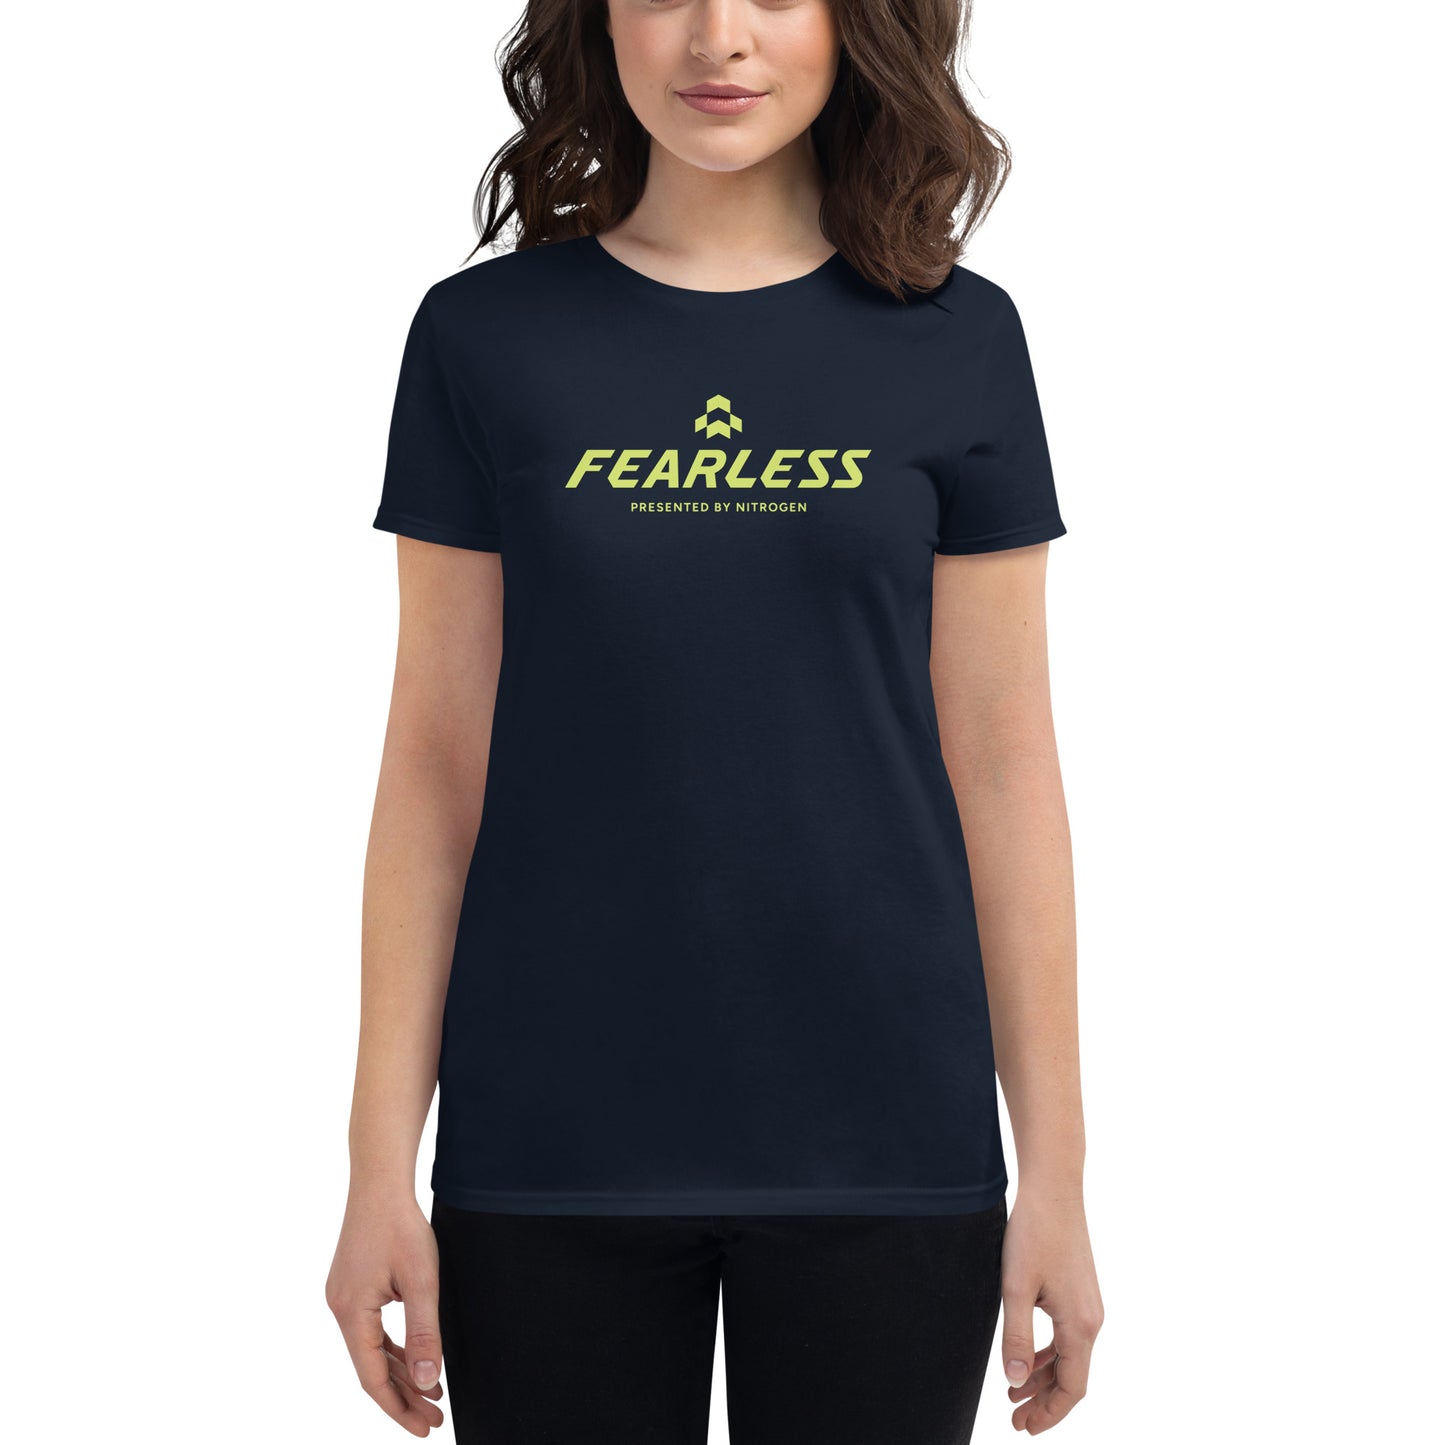 Fearless Women's T-Shirt